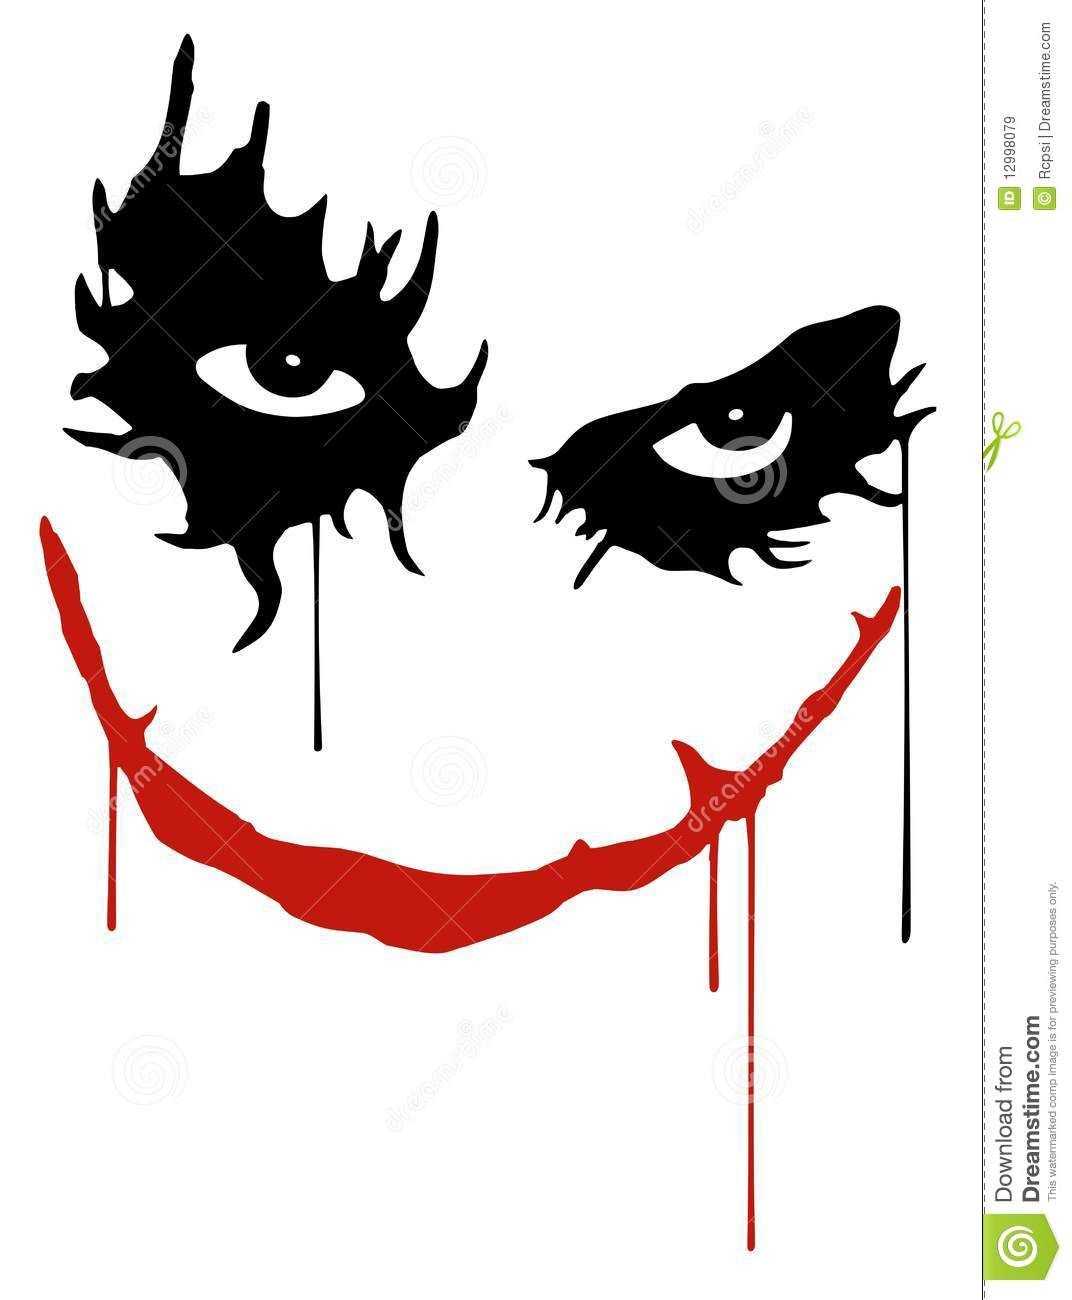 Images For > Joker Card Pumpkin Stencil | Joker Card In Joker Card Template